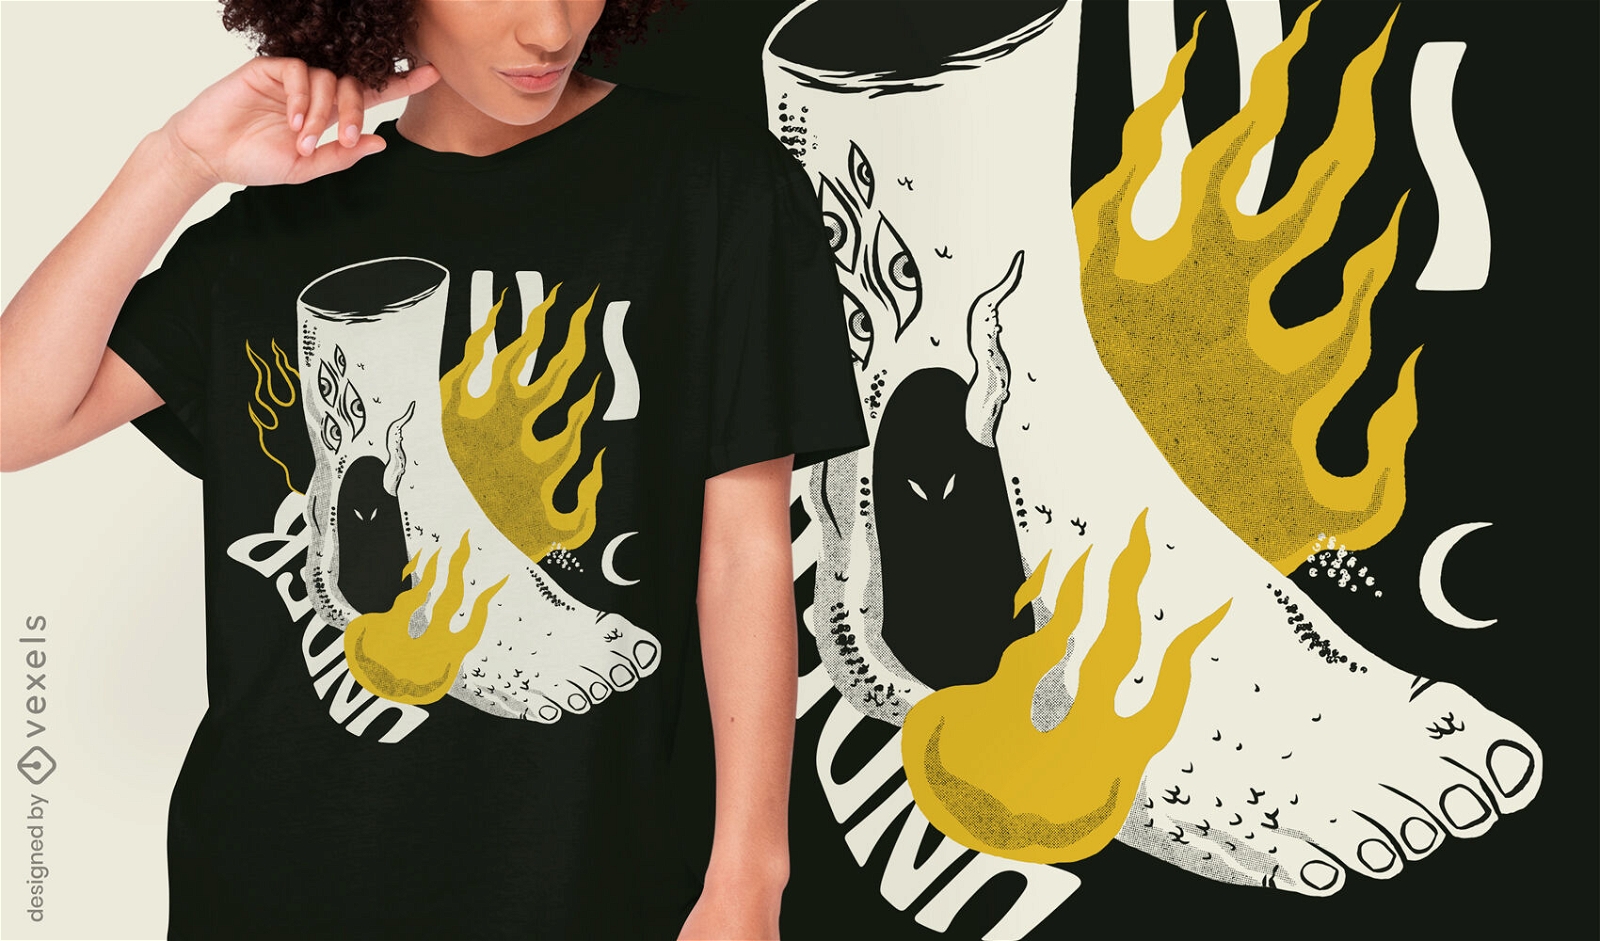 Bizarre body foot on fire t-shirt design